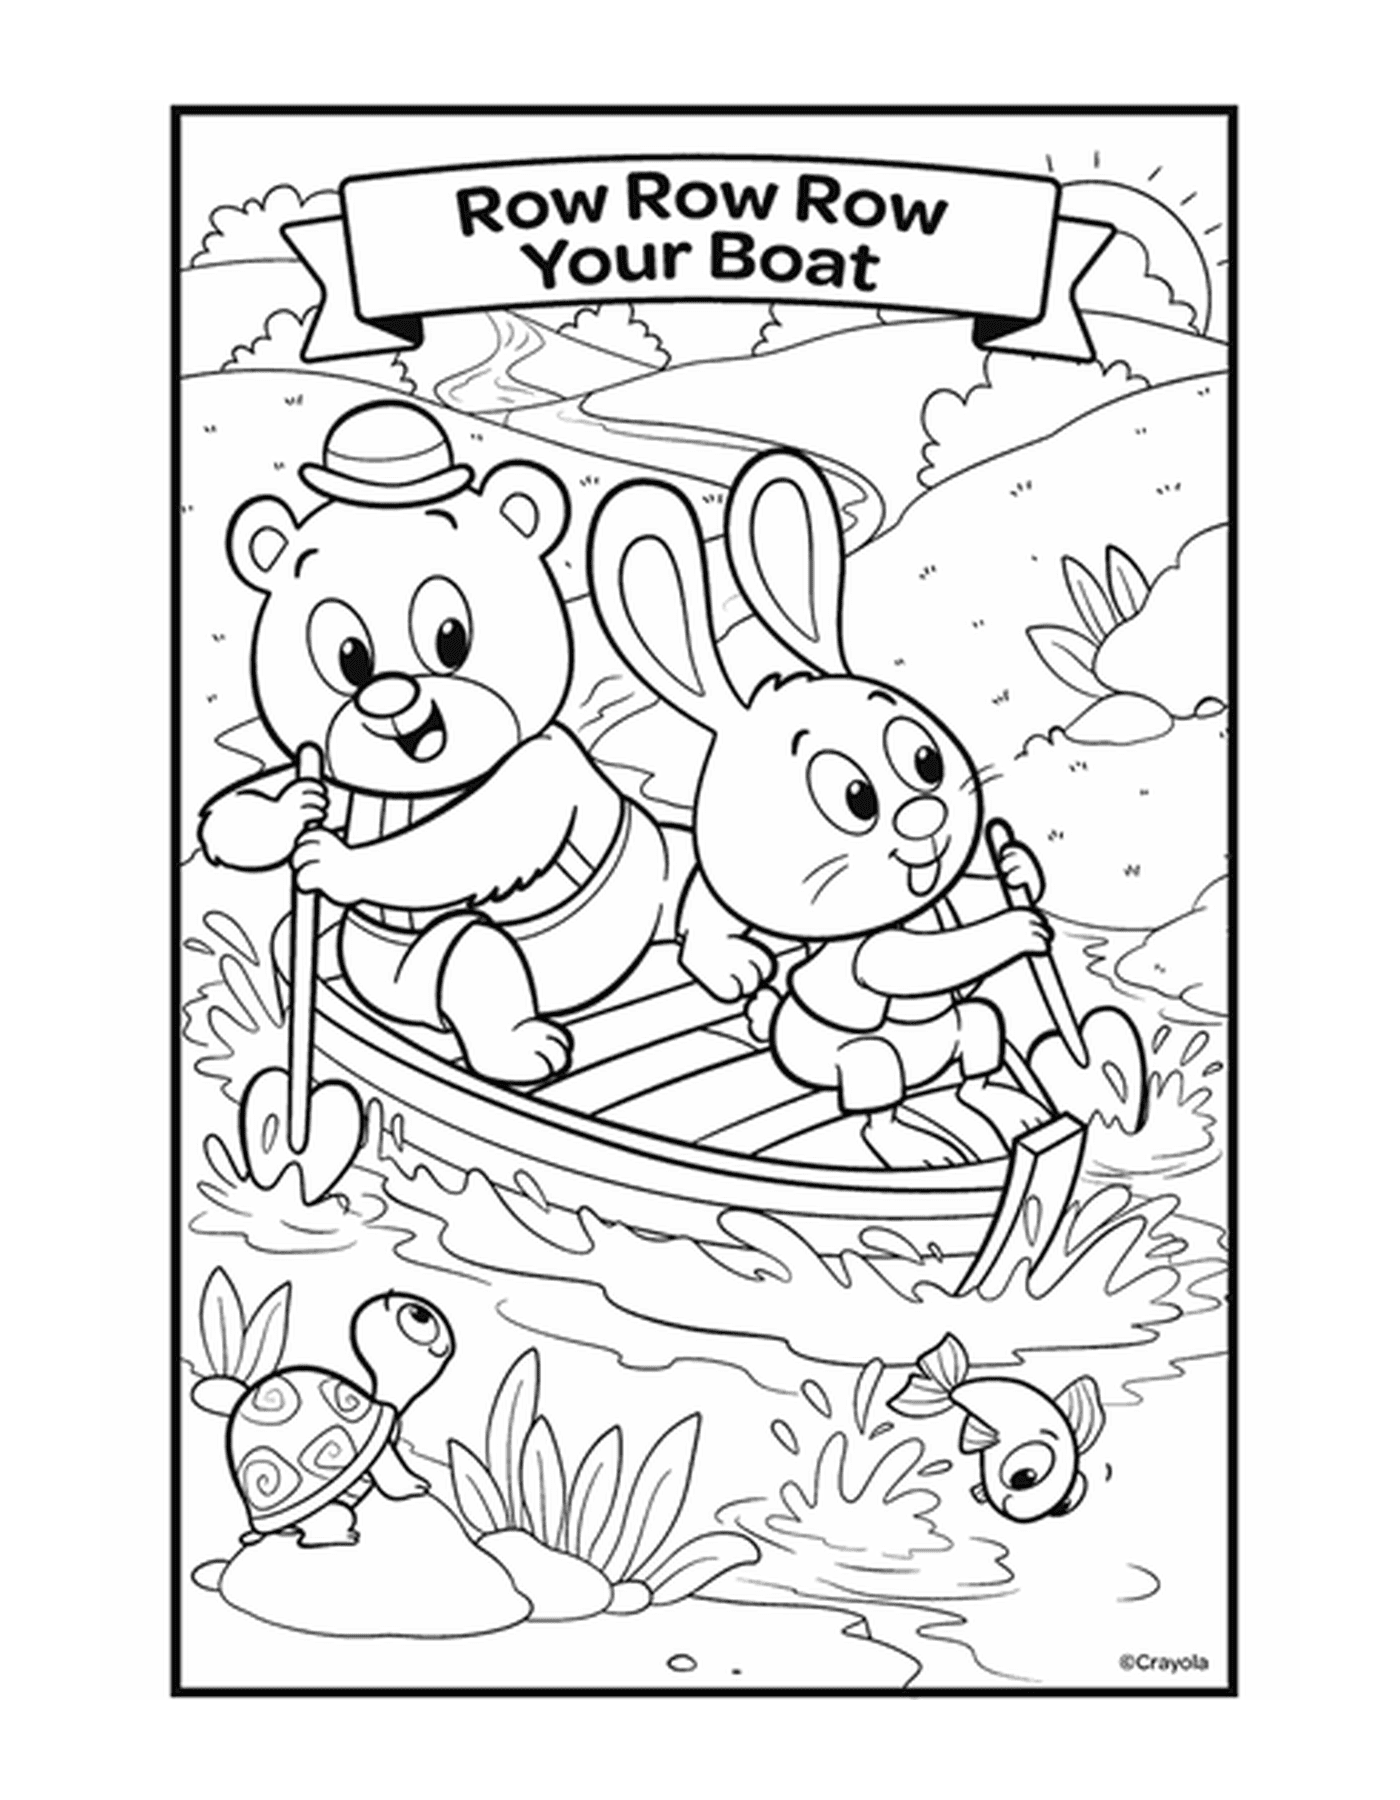  Рисунок Роу, Роу, Лодка с двумя животными в лодке на воде 